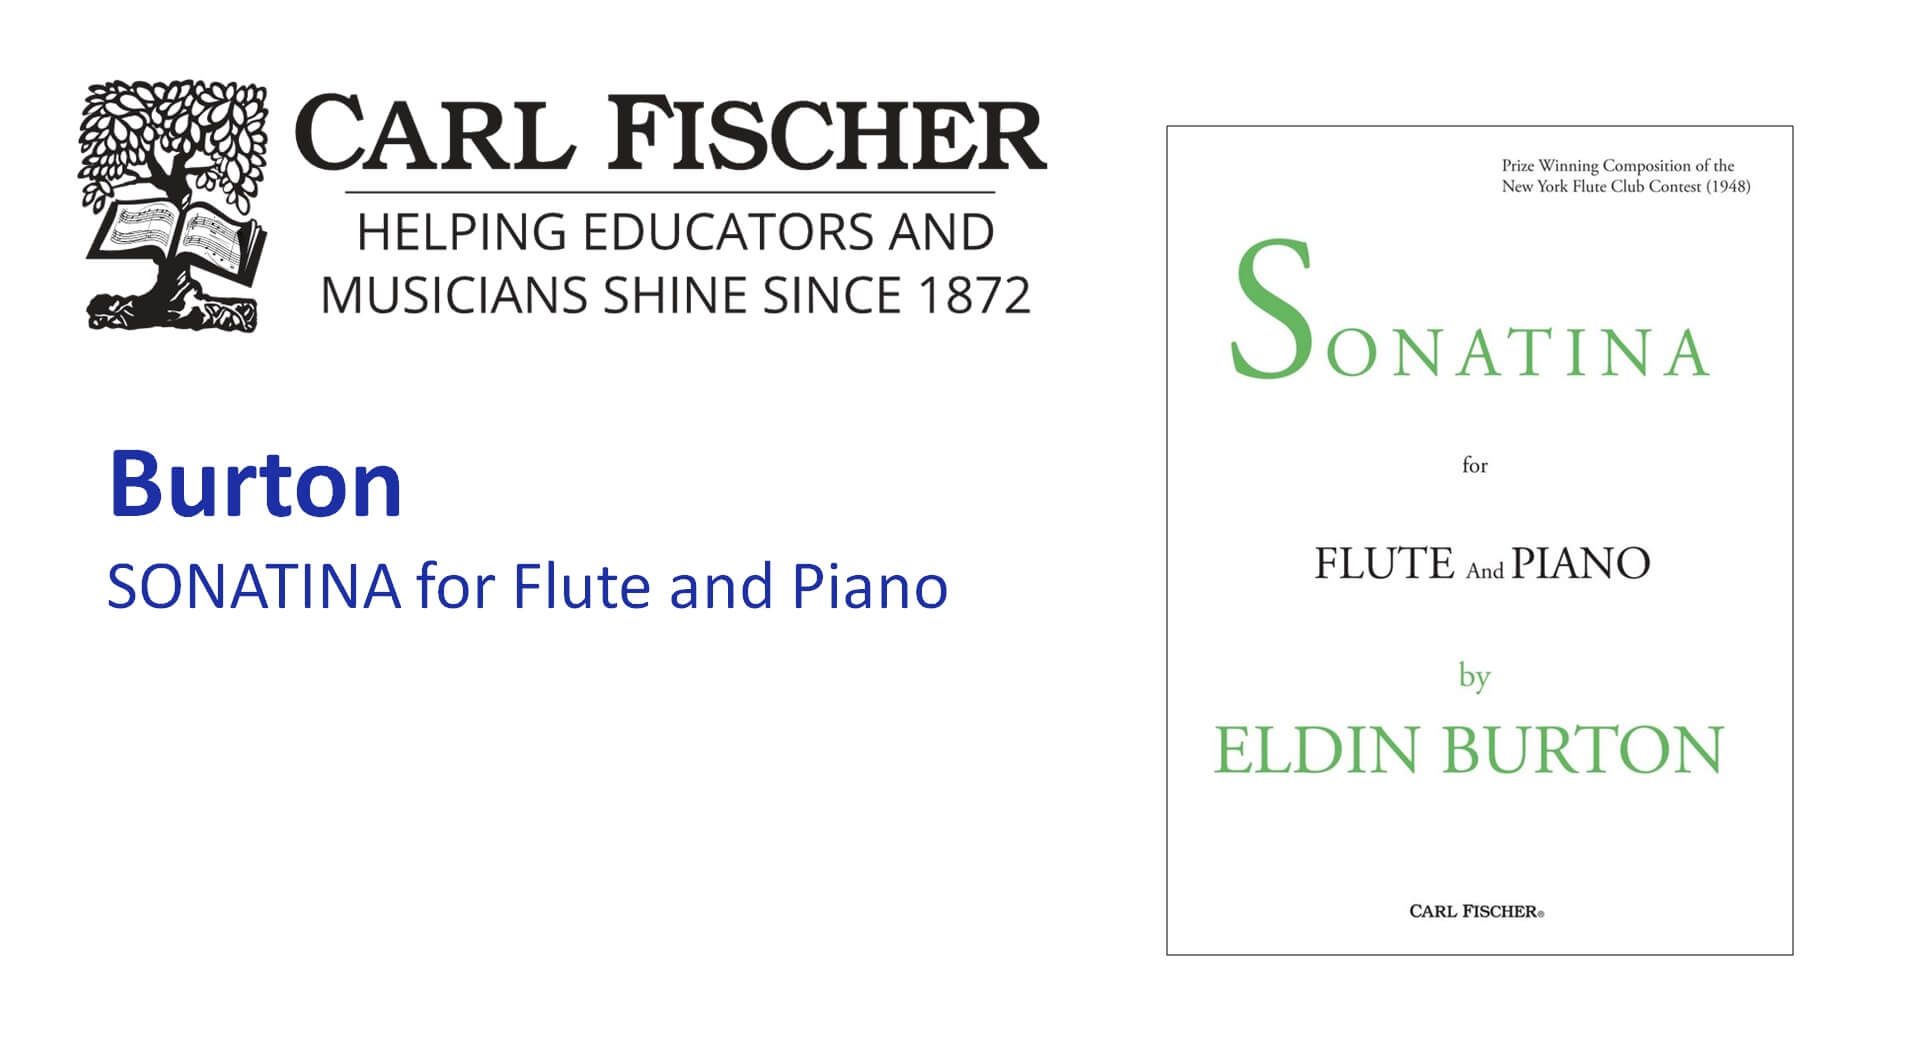 Burton SONATINA for Flute and Piano